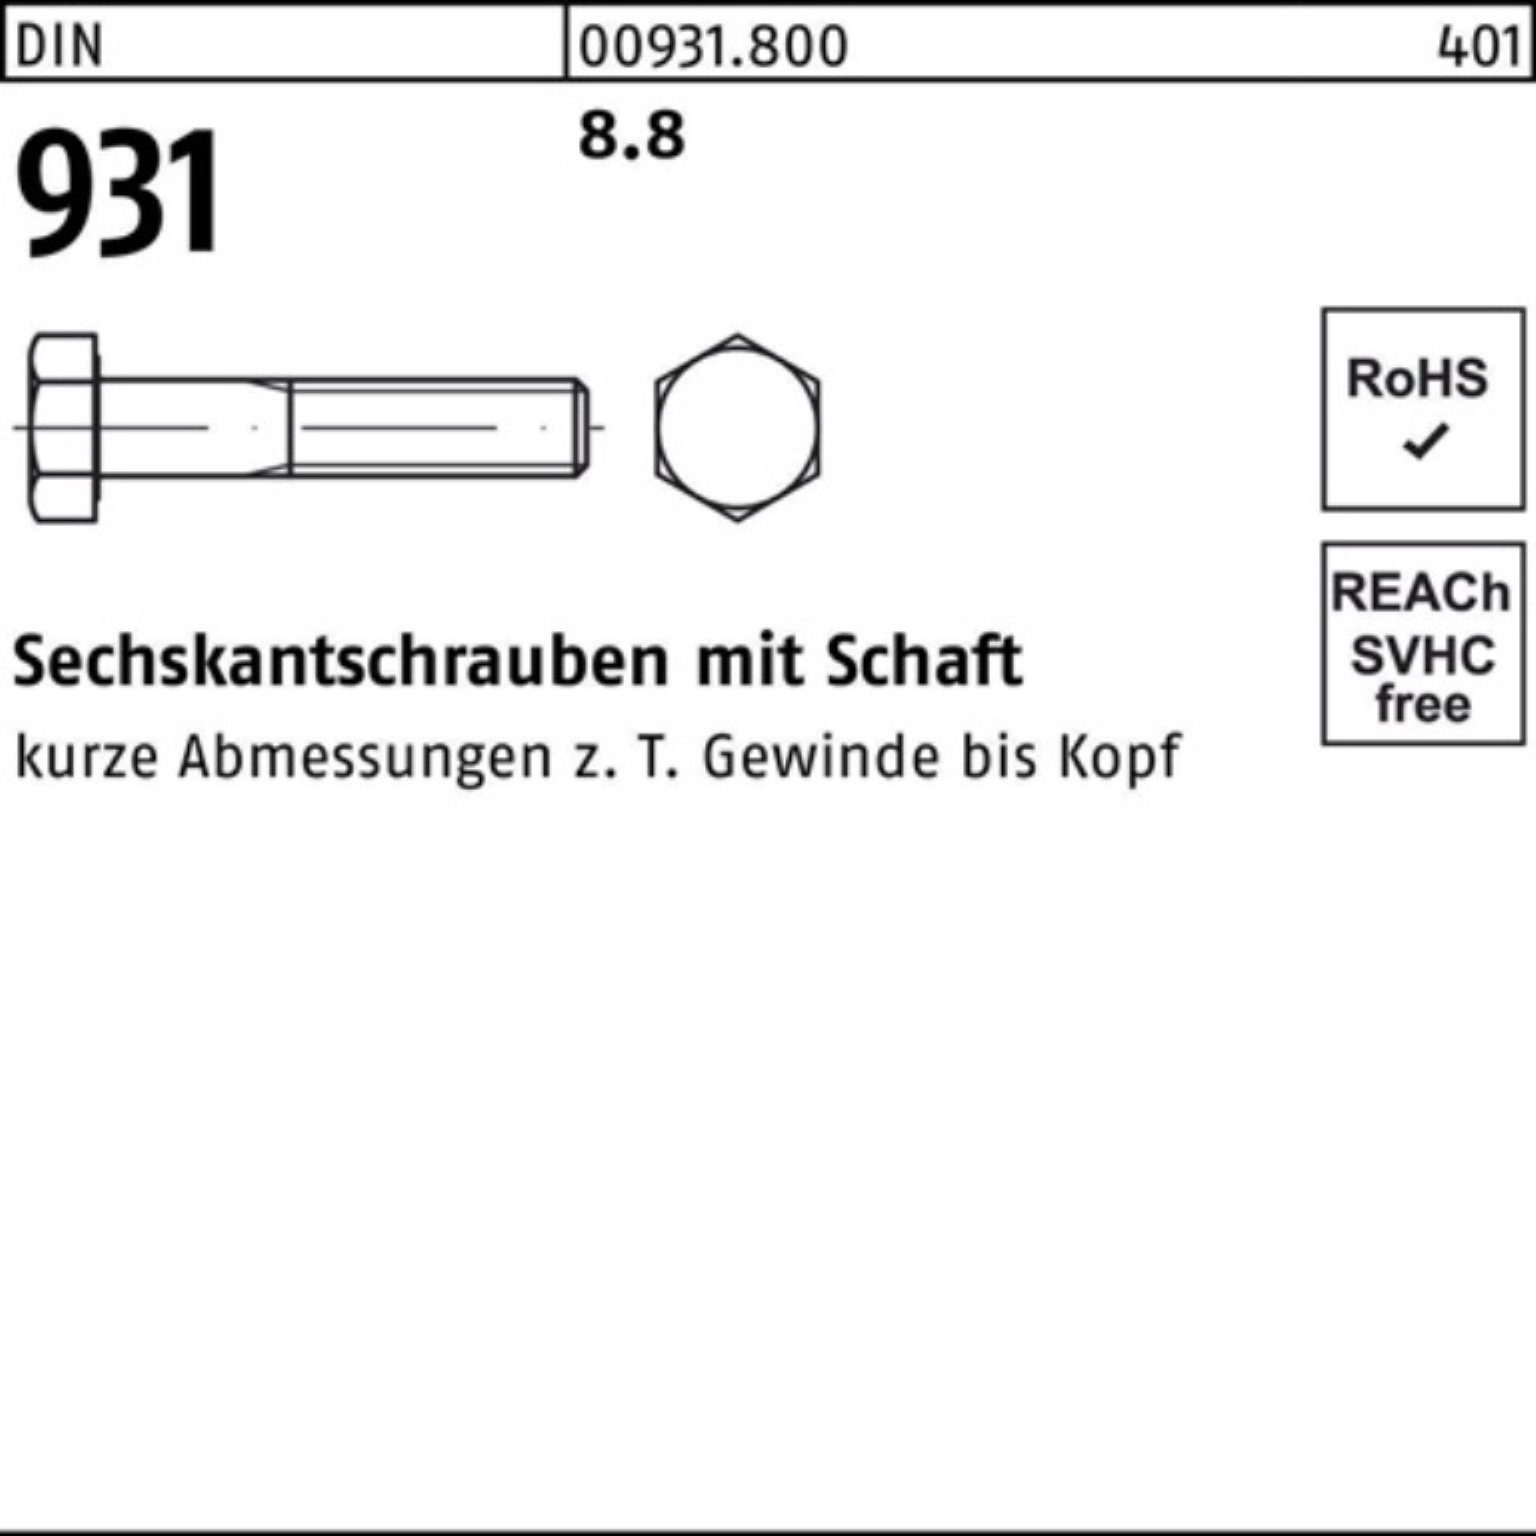 Reyher Sechskantschraube 100er DIN 8.8 Stück 931 420 Sechskantschraube Pack 1 DIN M24x Schaft